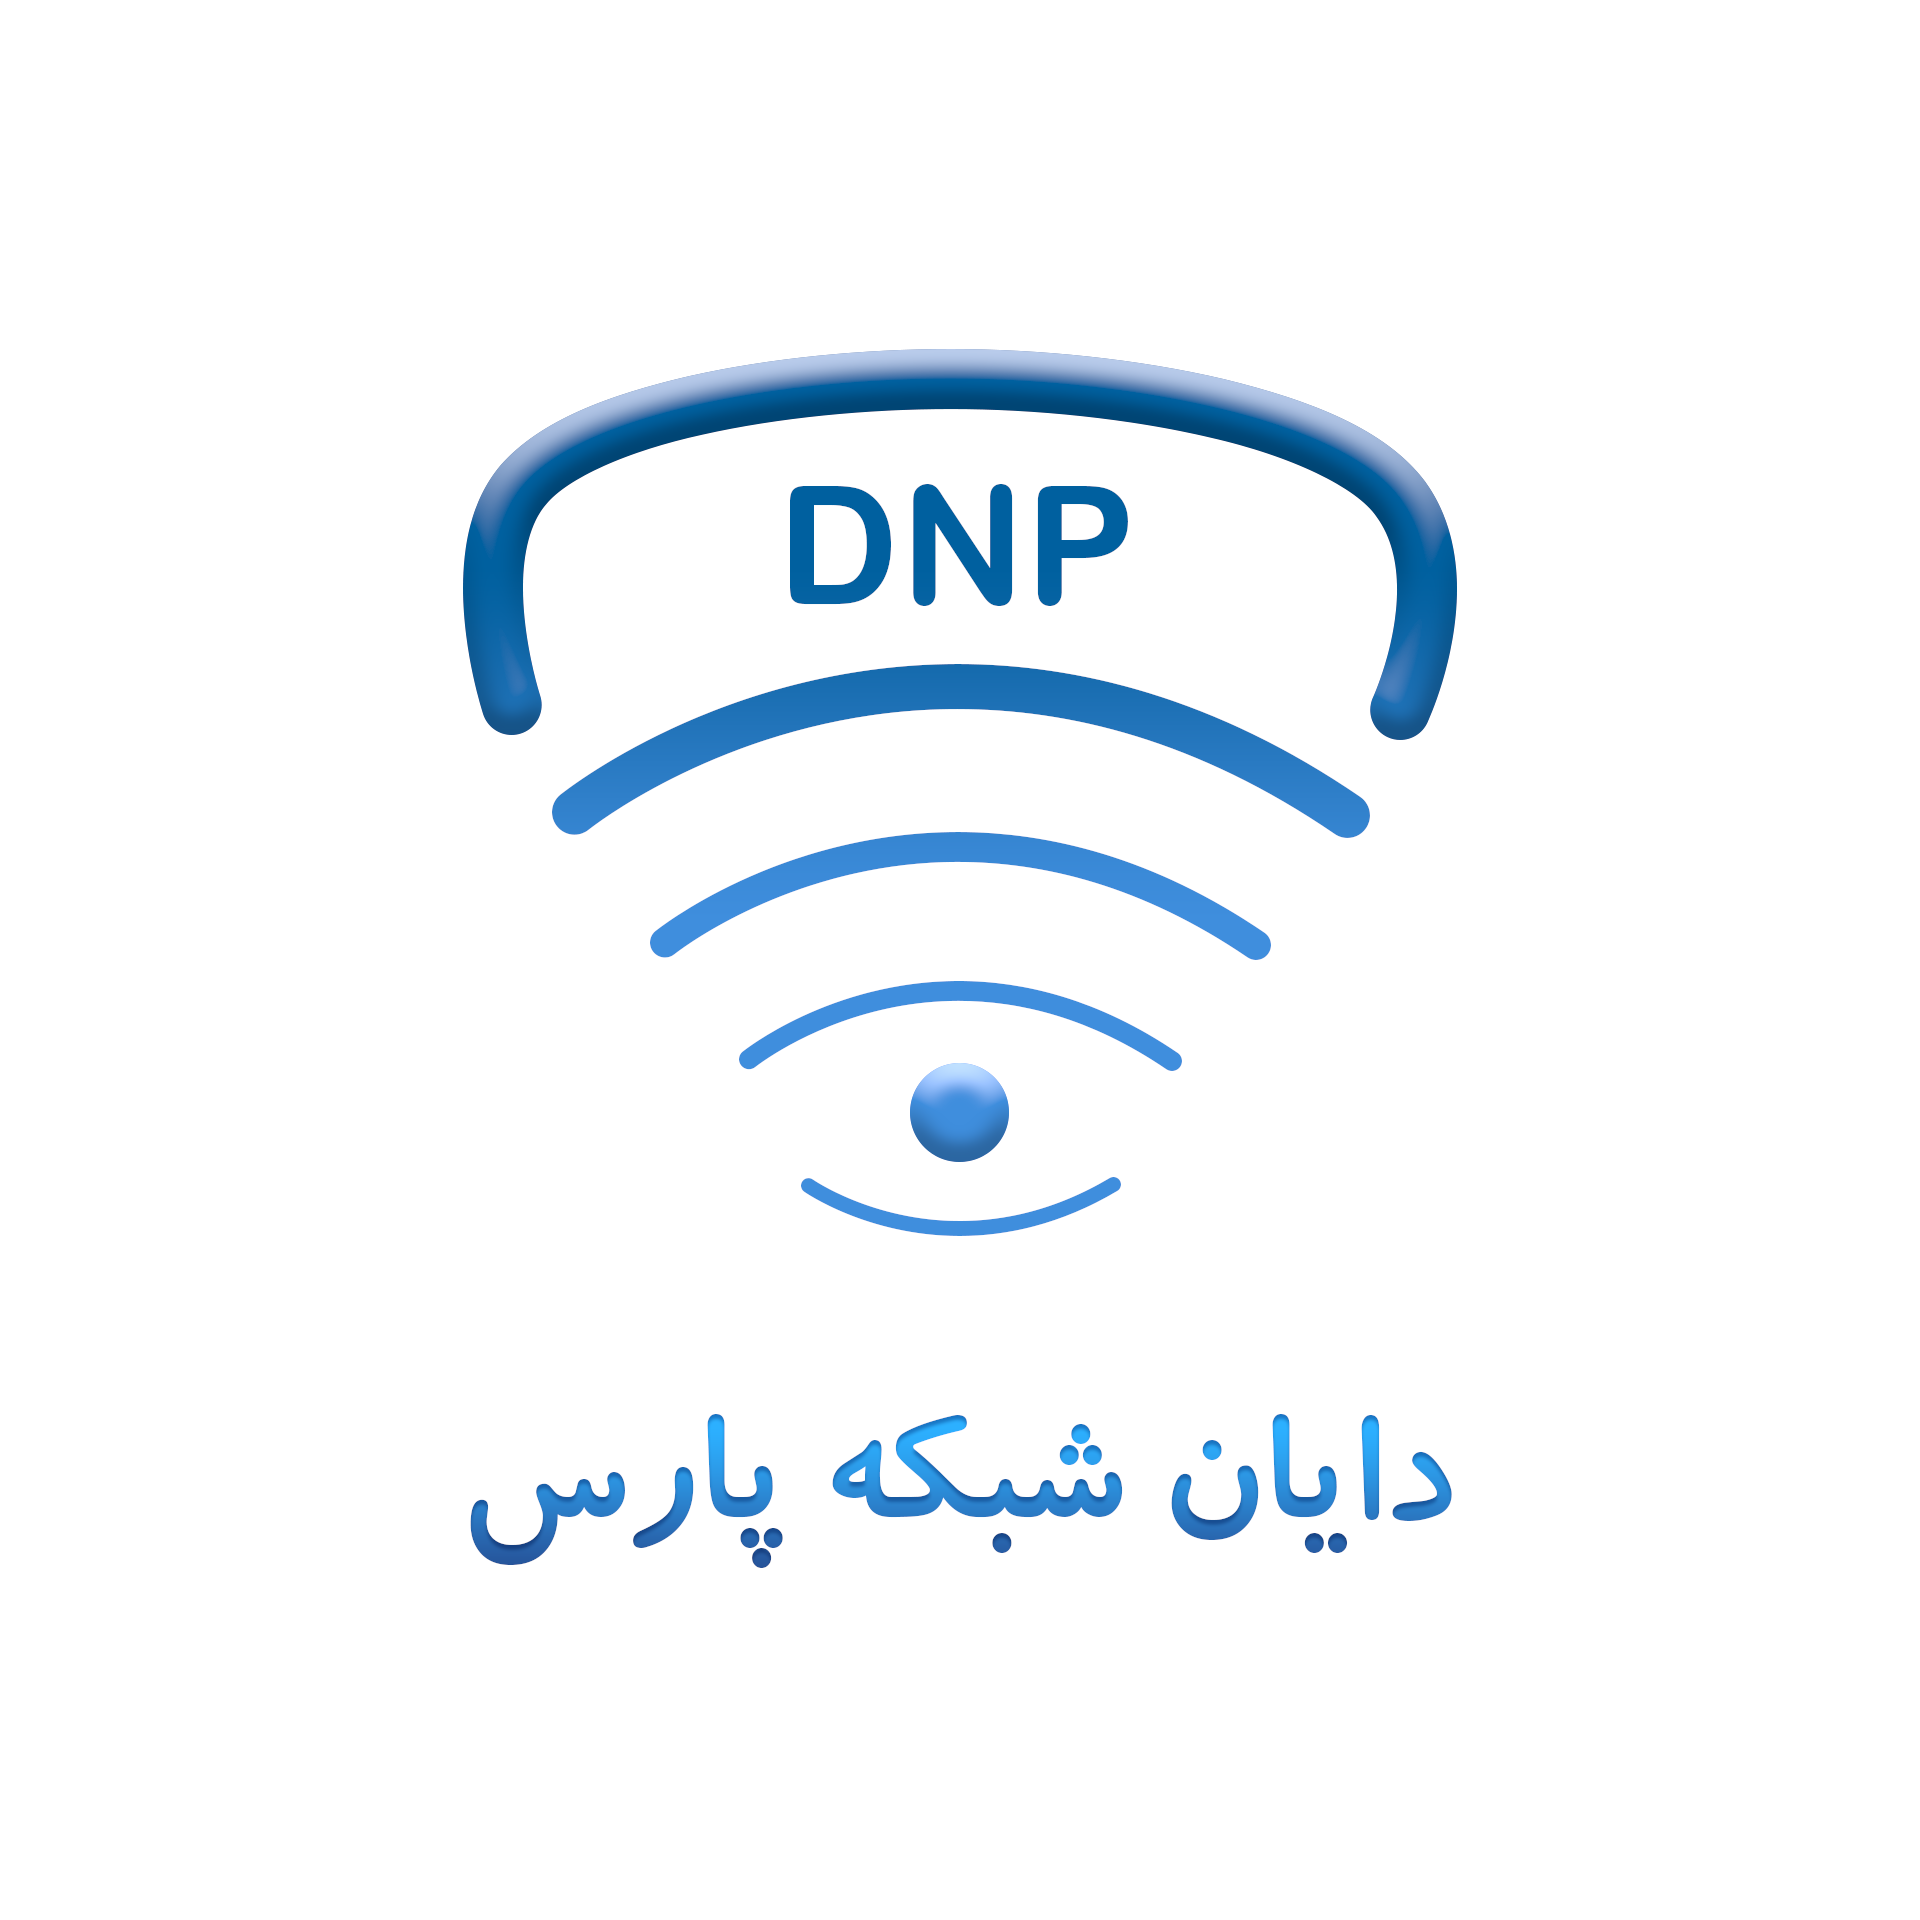 فروشگاه دایان شبکه پارس